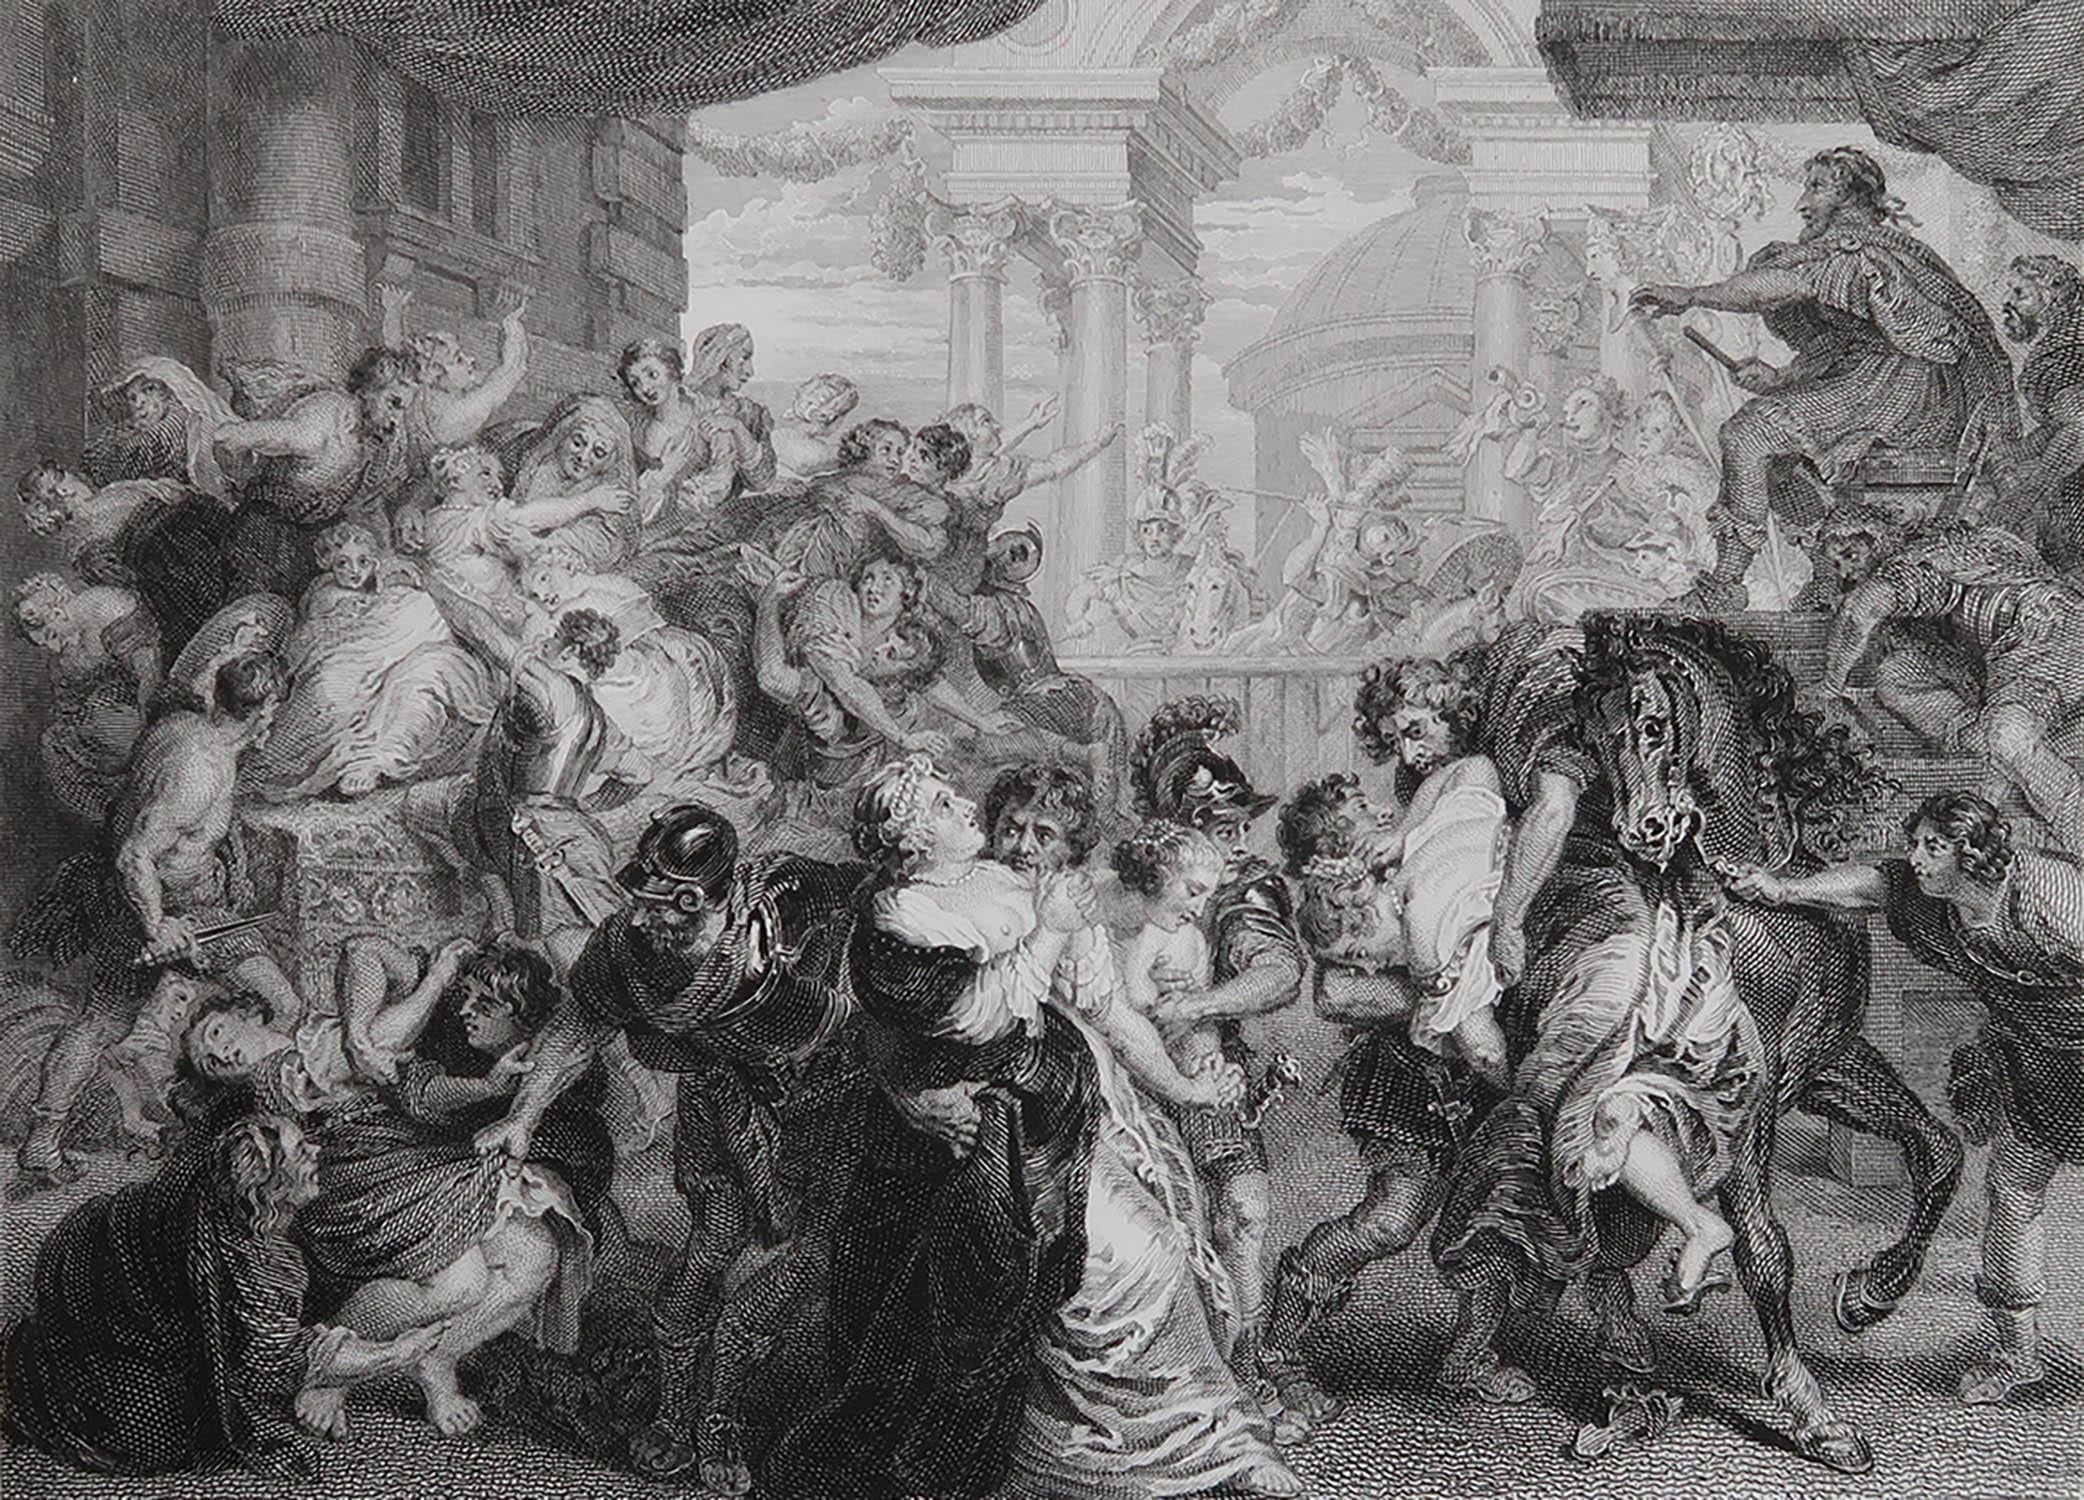 Merveilleuse image de l'Enlèvement des Sabines

Gravure sur acier fin

Publié par Jones & Co. C.1840

Non encadré.

